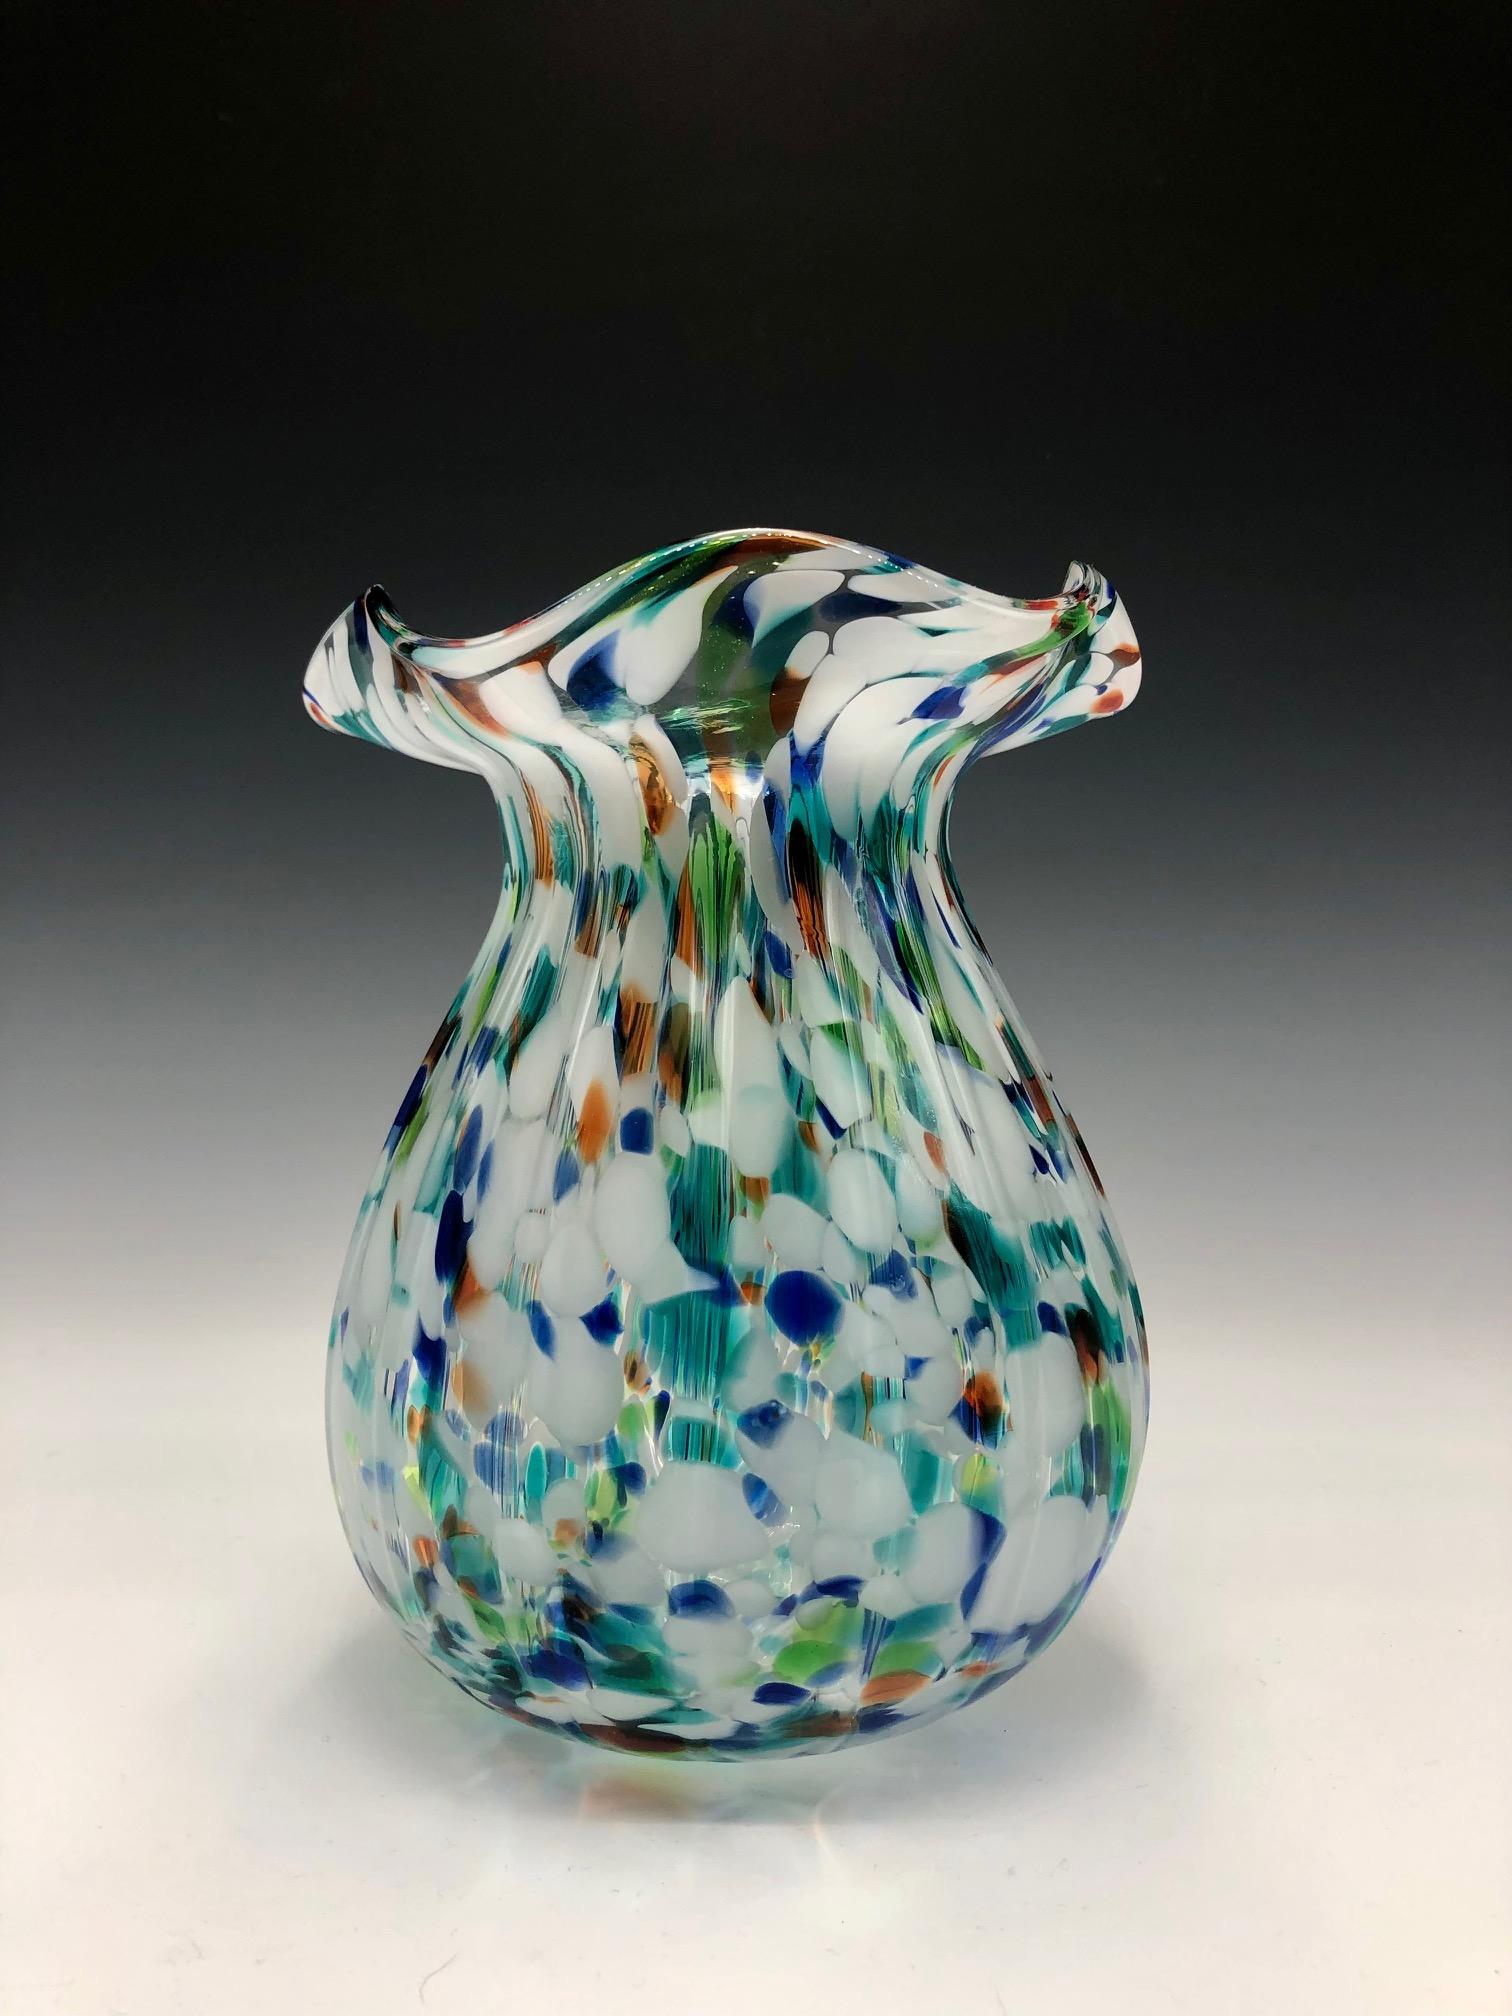 Elegant vase en verre d'art multicolore de style Murano des années 1970 en forme d'ampoule avec un col cintré et un dessus à volants. 

Une belle pièce moderne et colorée. 

Excellent état vintage. Pas d'ébréchures ni de fissures.

Murano glass, art